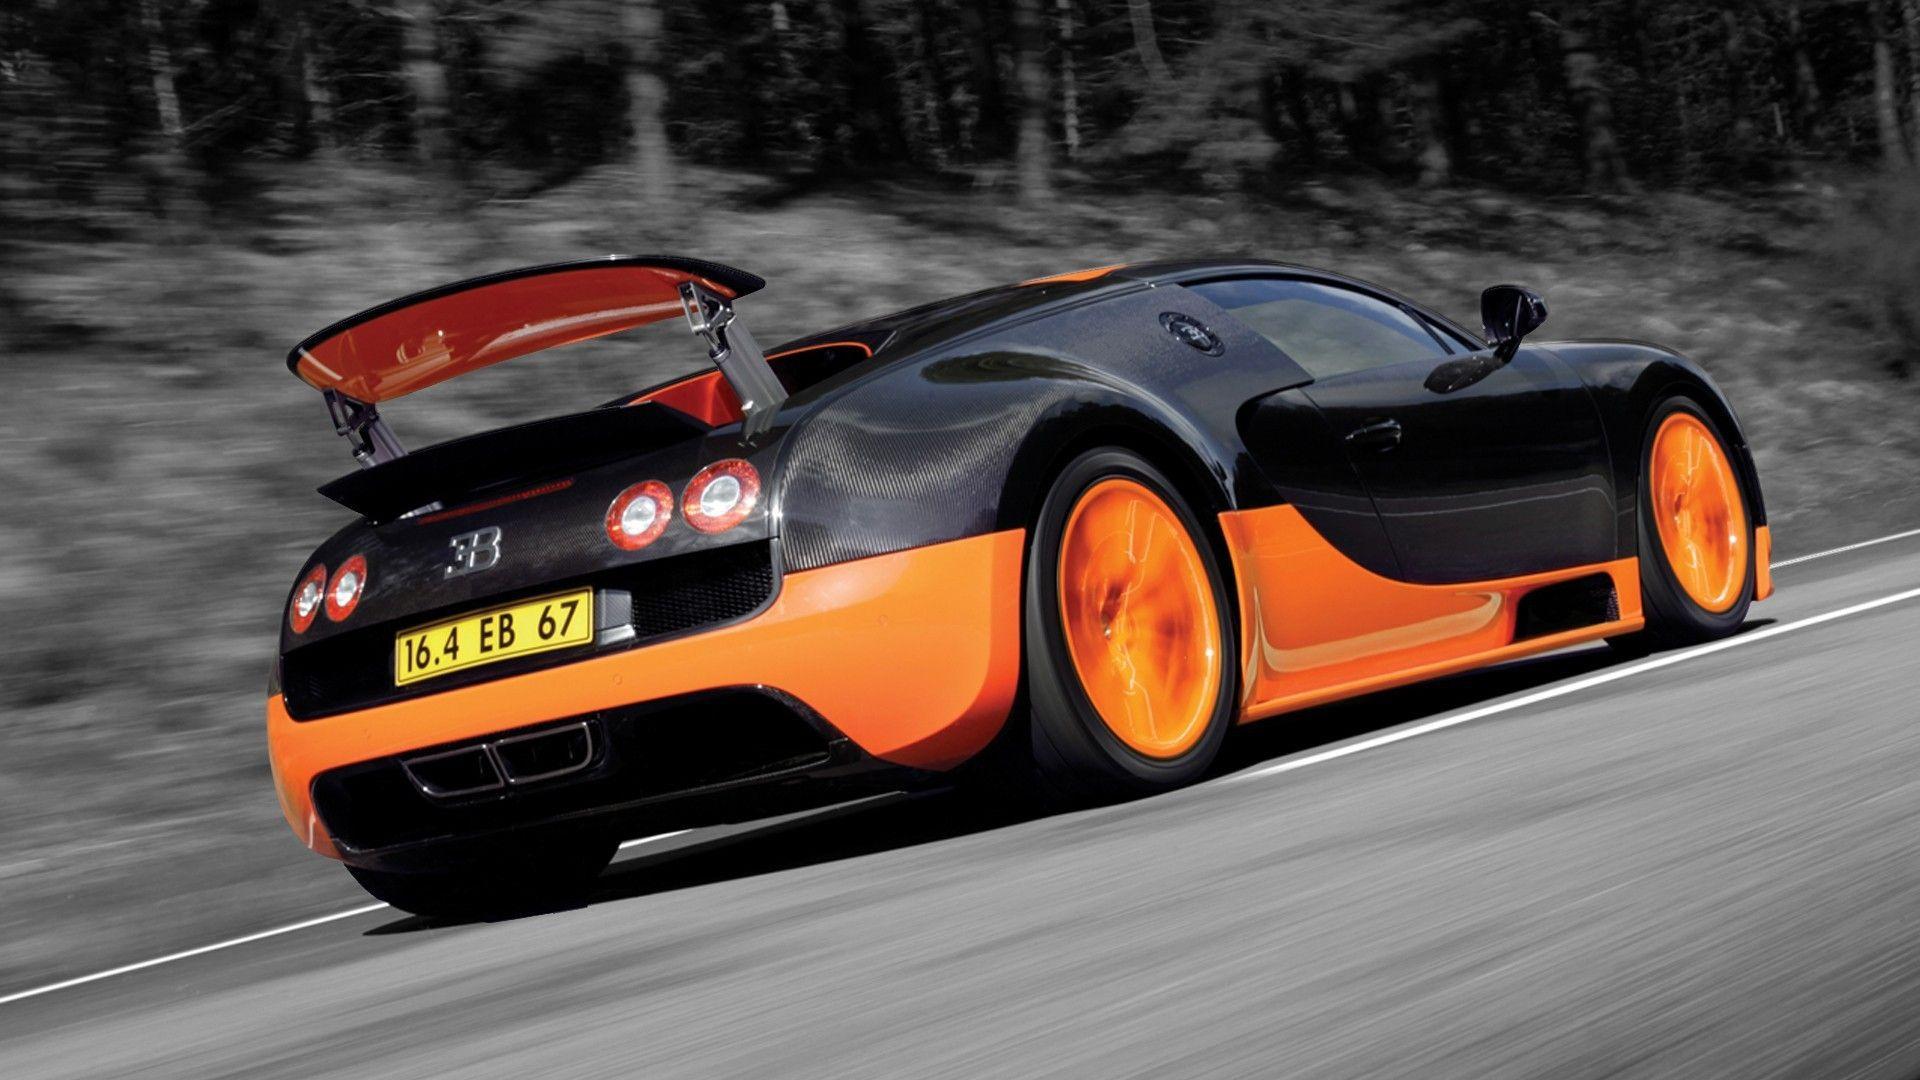 Bugatti Veyron Super Sport Wallpaper Widescreen